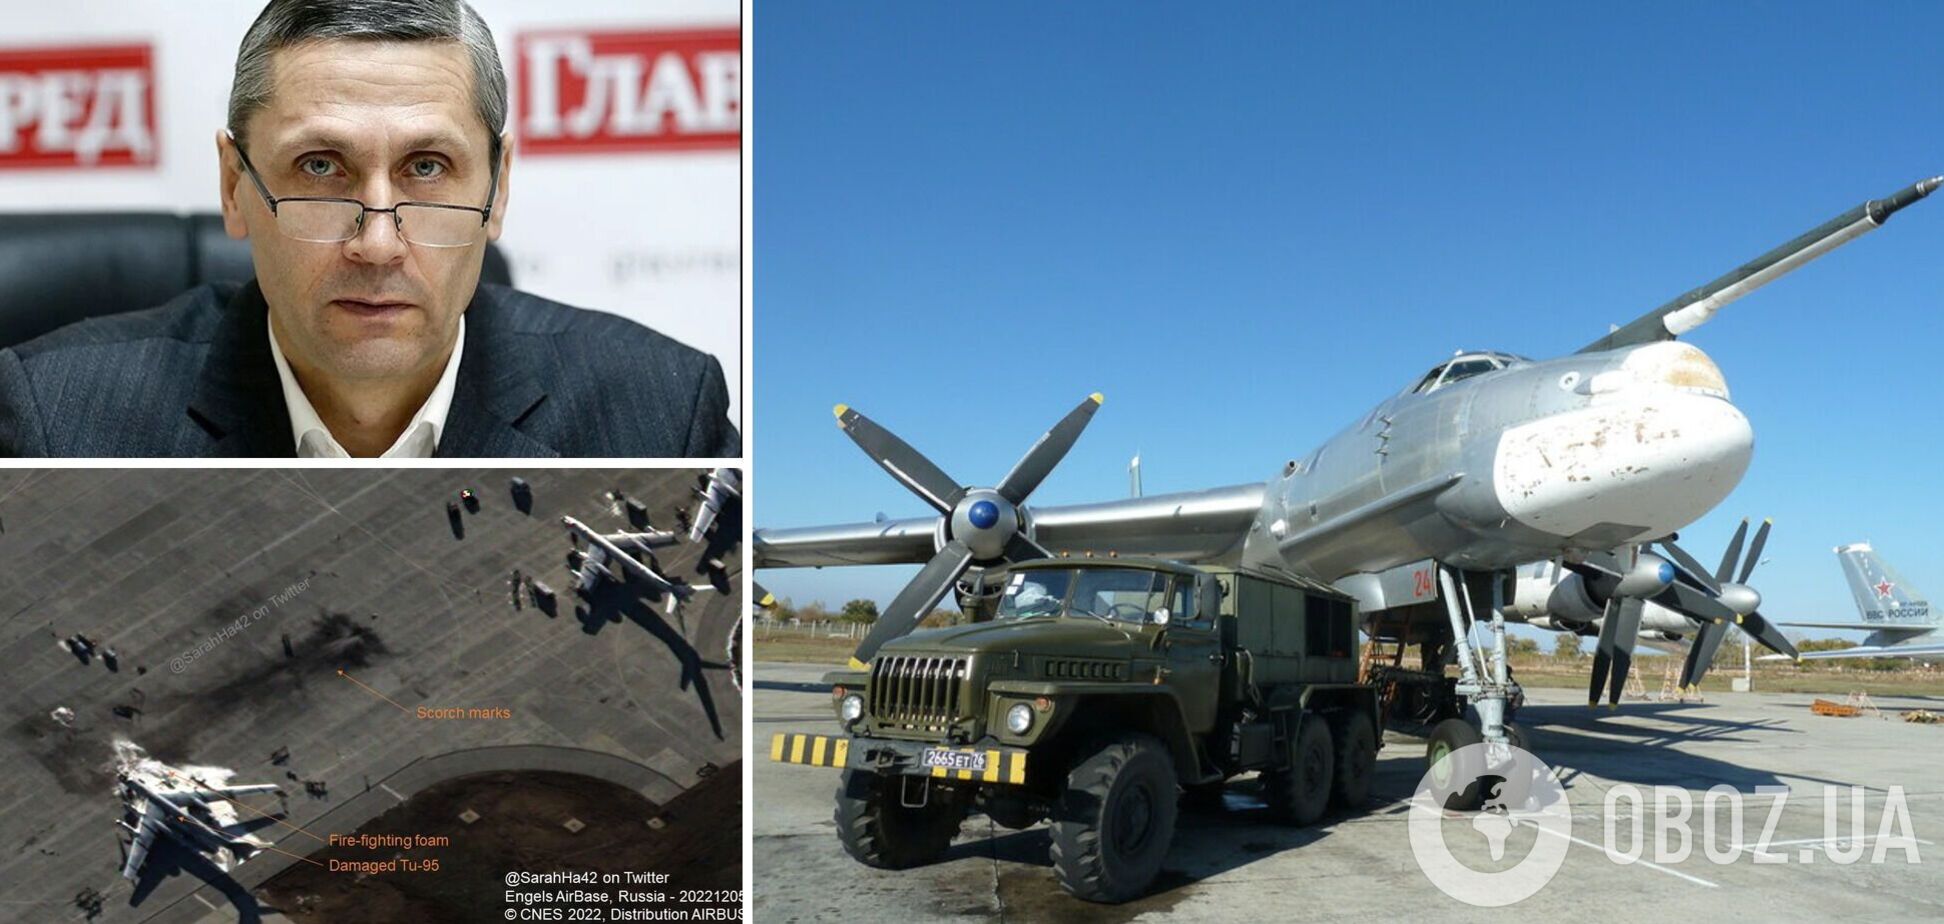 Козий: 'бавовна' на аэродромах РФ ослабила врага, Украина готовится к более серьезным атакам. Интервью